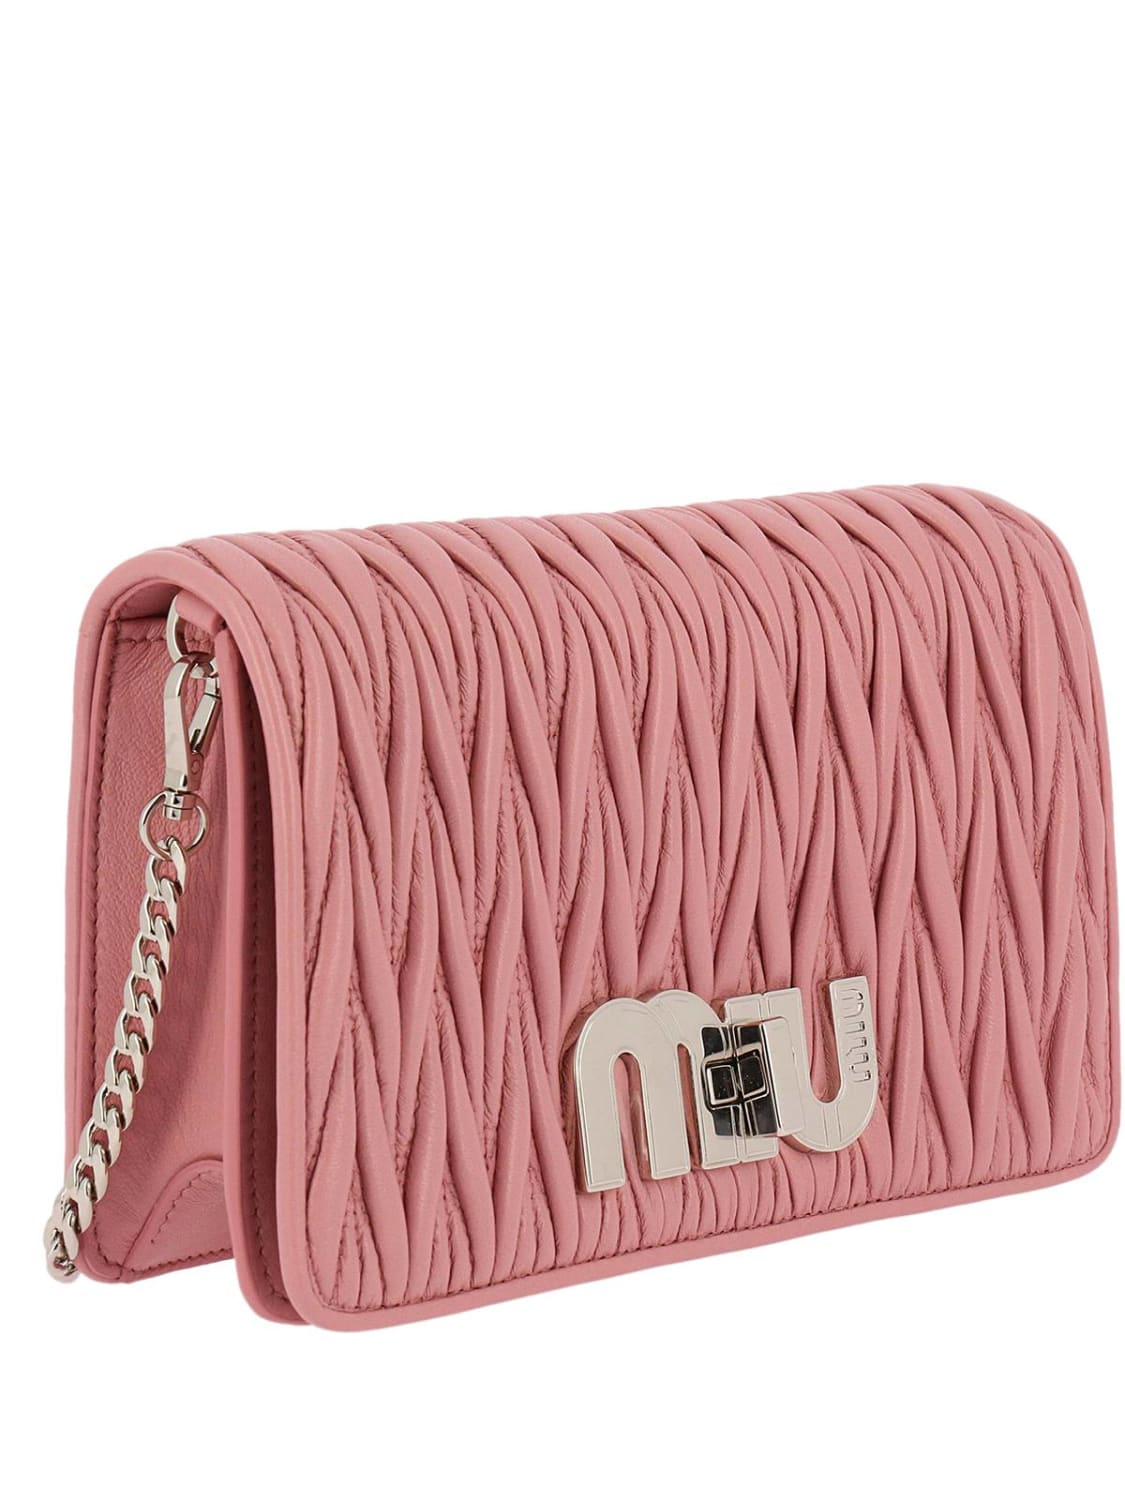 Mini bag Miu Miu: Miu Miu mini bag for women pink 2